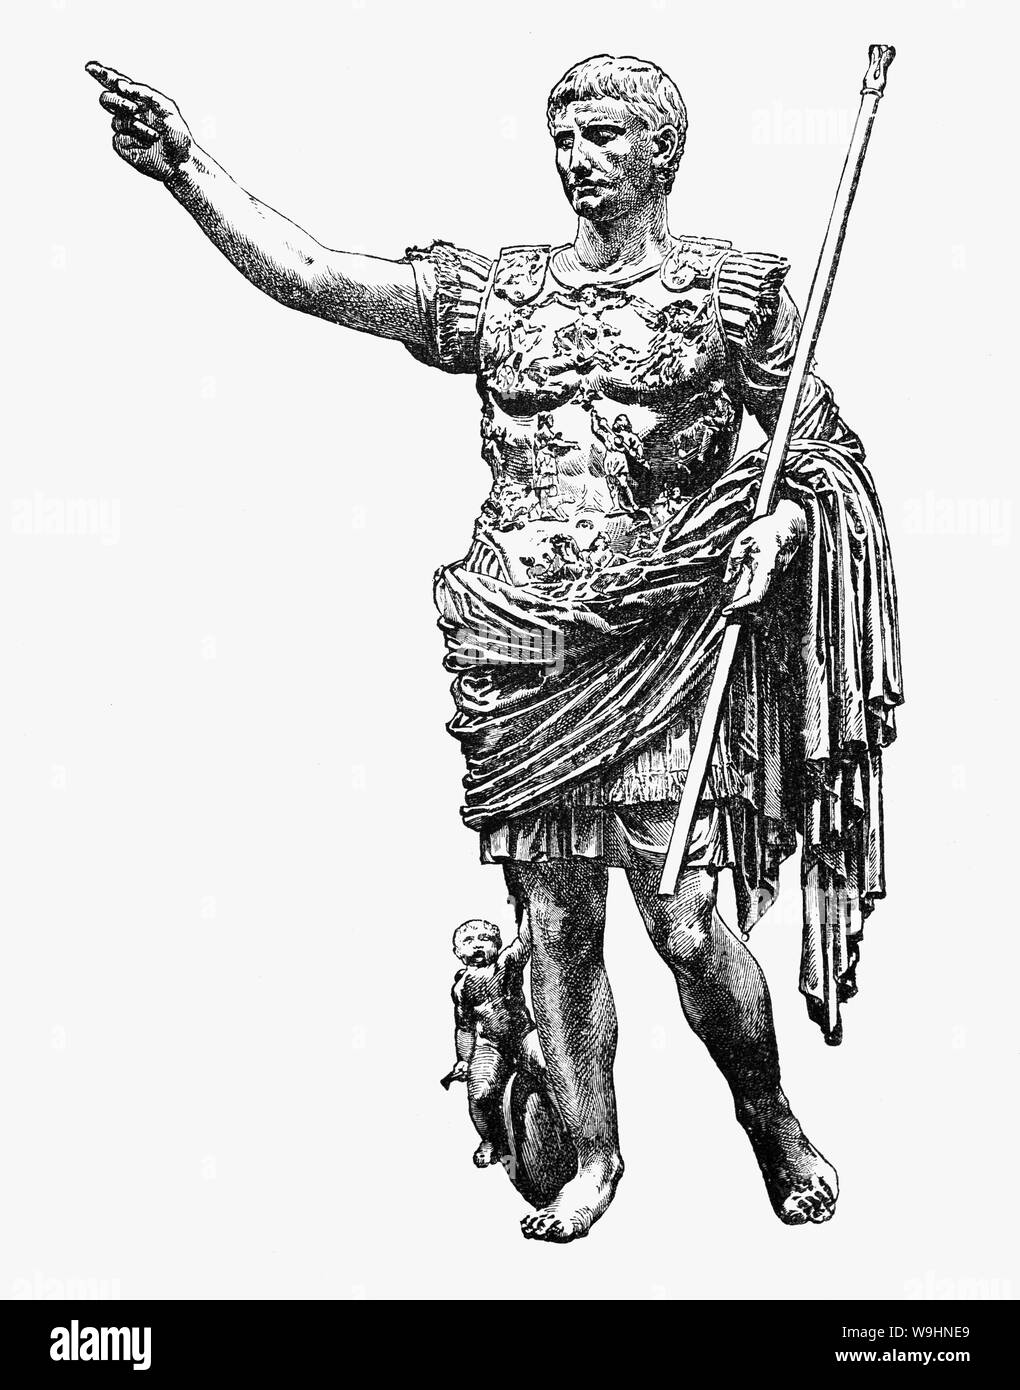 Augusto (63 BC - 14AD), statista romano e capo militare è stato il primo imperatore del Sacro Romano Impero, che regna dal 27 A.C. fino alla sua morte in AD 14. Il suo status come il fondatore del principato romano consolidato una durevole eredità come uno dei più efficaci e controversi leader nella storia umana avviando un'epoca di relativa pace noto come la Pax Romana di durare per più di due secoli, nonostante le continue guerre di espansione imperiale su dell'Impero frontiere e la lunga guerra civile nota come "l'anno dei quattro imperatori' al di sopra della successione imperiale. Foto Stock